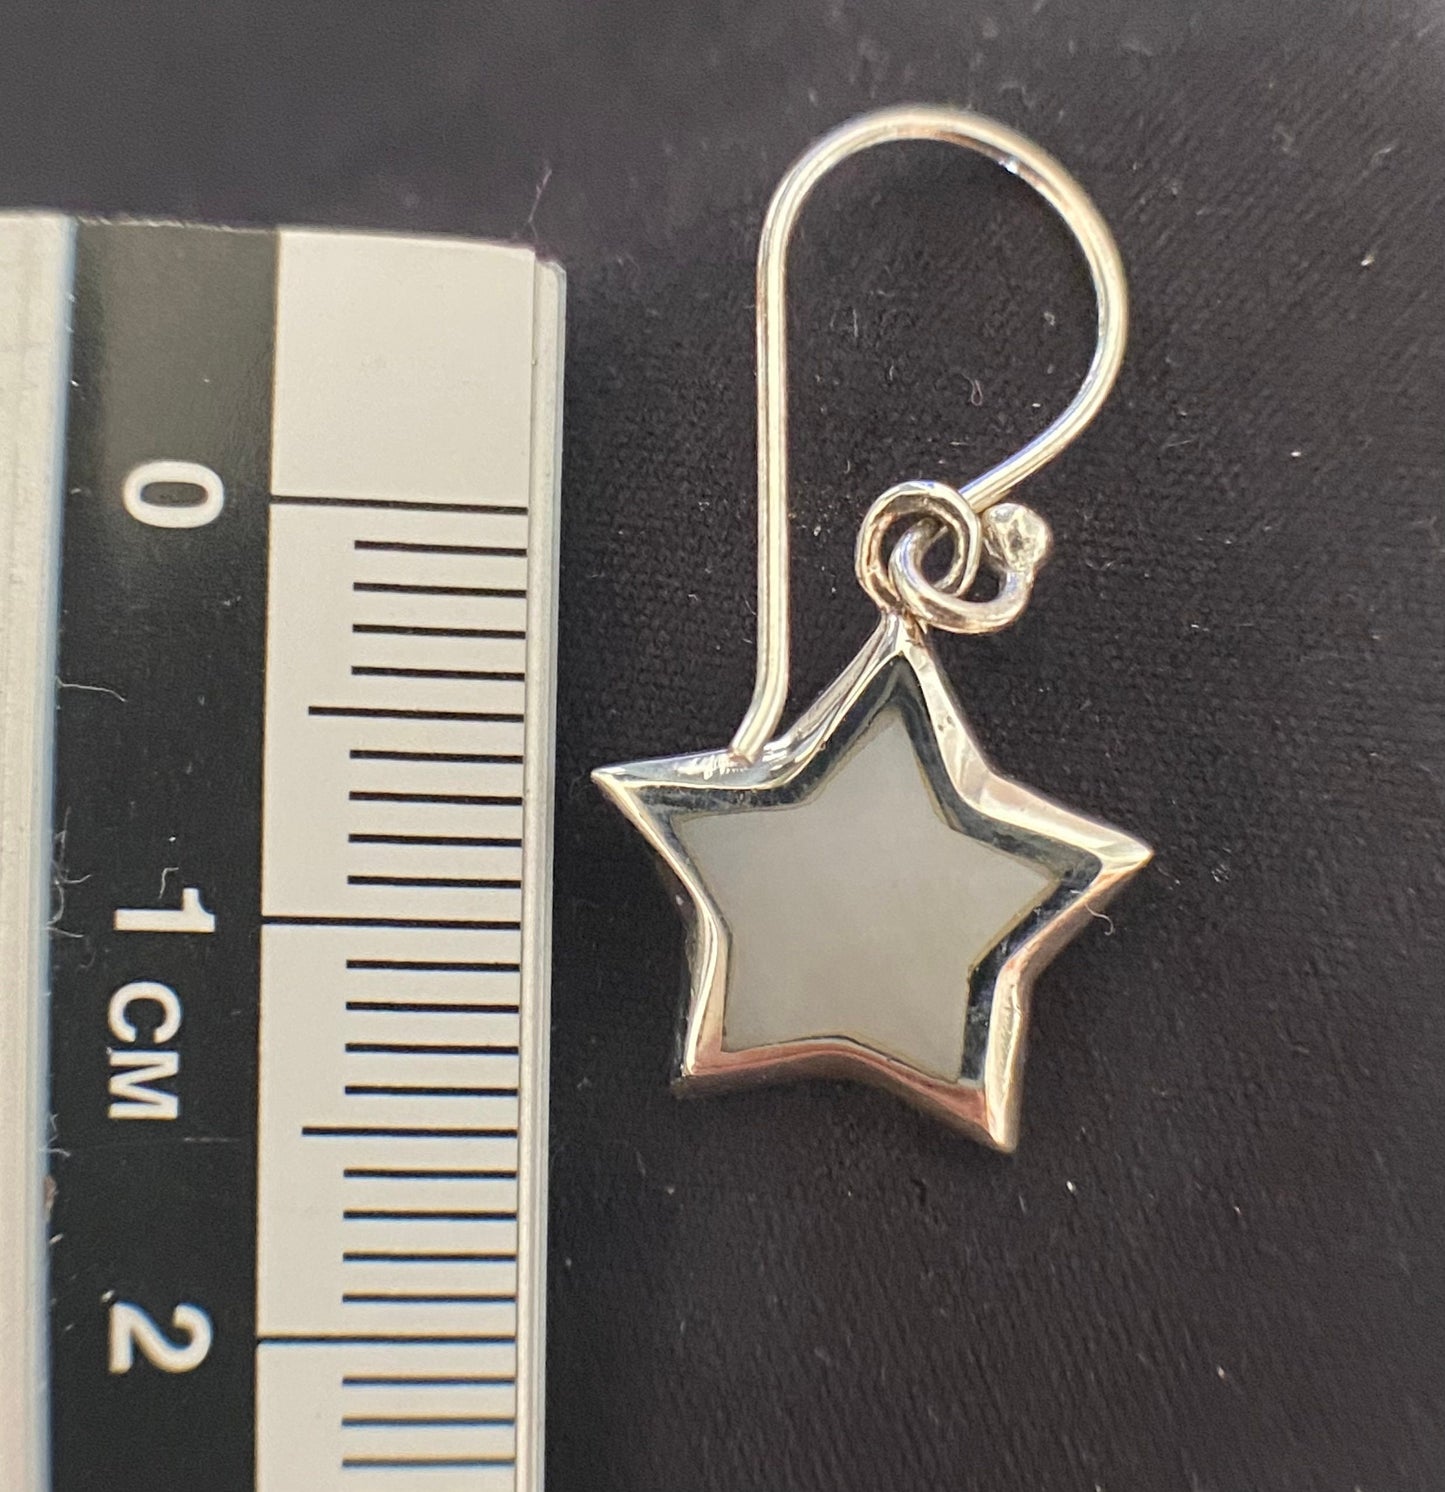 Nacre star wire earrings Sterling Silver 925 - TSE065